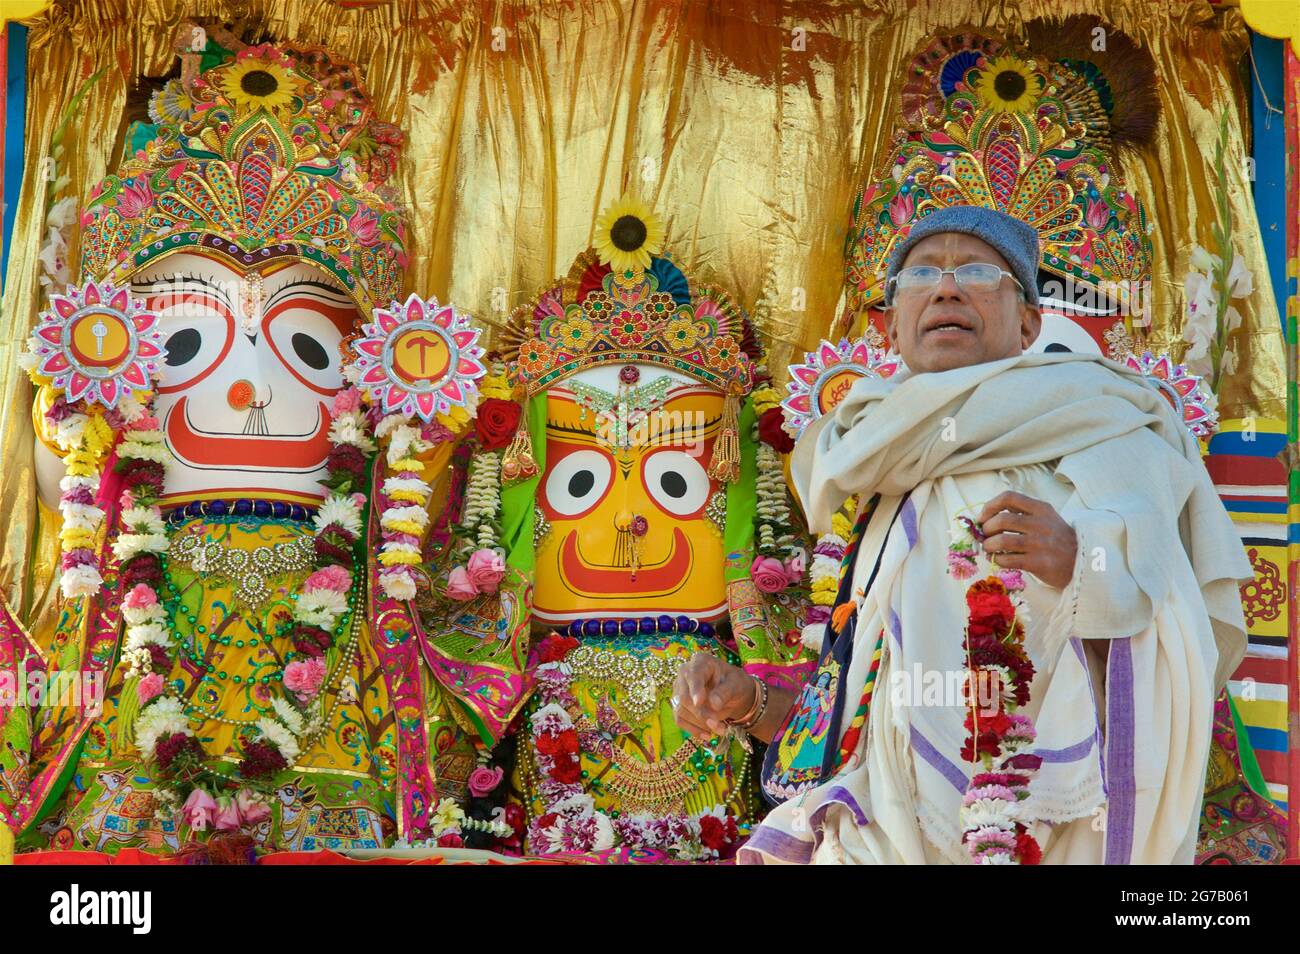 Hare Krishna prêtre sur un jugggernaut de procession, Brighton & Hove, Angleterre. Le festival annuel de Rathayatra pour Lord Krishna et ses fidèles proménades le long de l'esplanade Hove chaque année. Krishna, dans sa forme de Jagannatha, est tiré le long d'un grand jongleur en bois. Banque D'Images